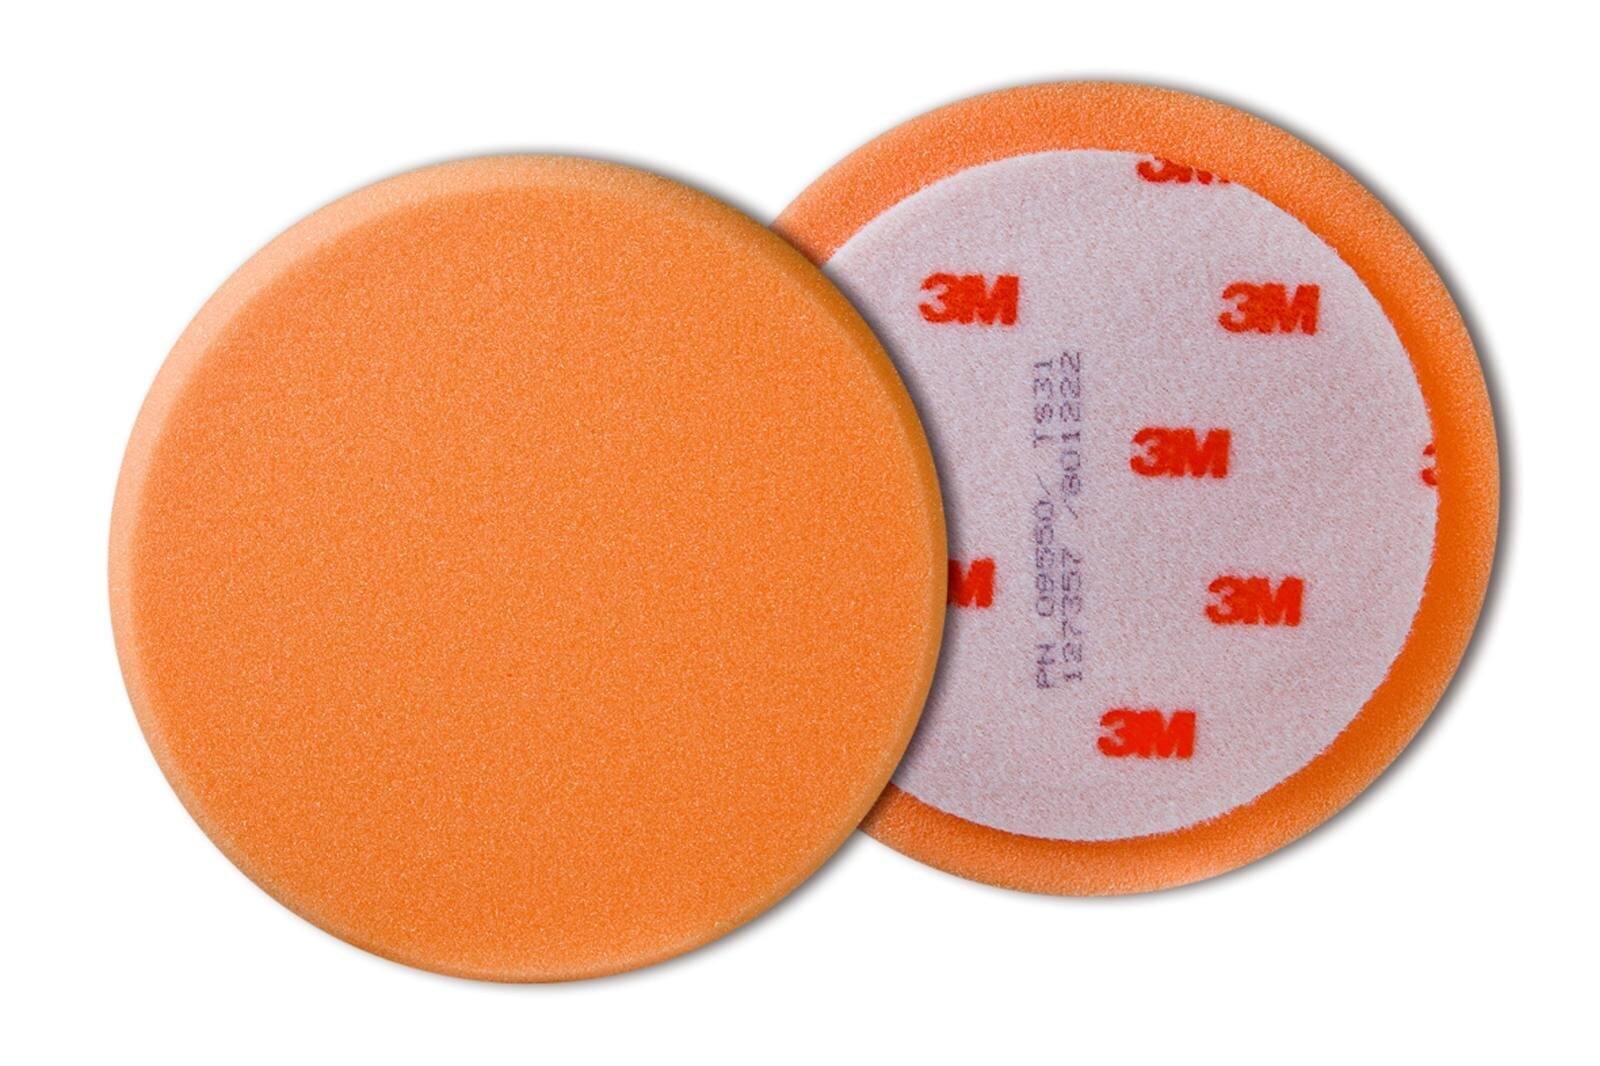 3M Perfect-it III kiillotusvaahto, sileä, oranssi, 76,2 mm #57158